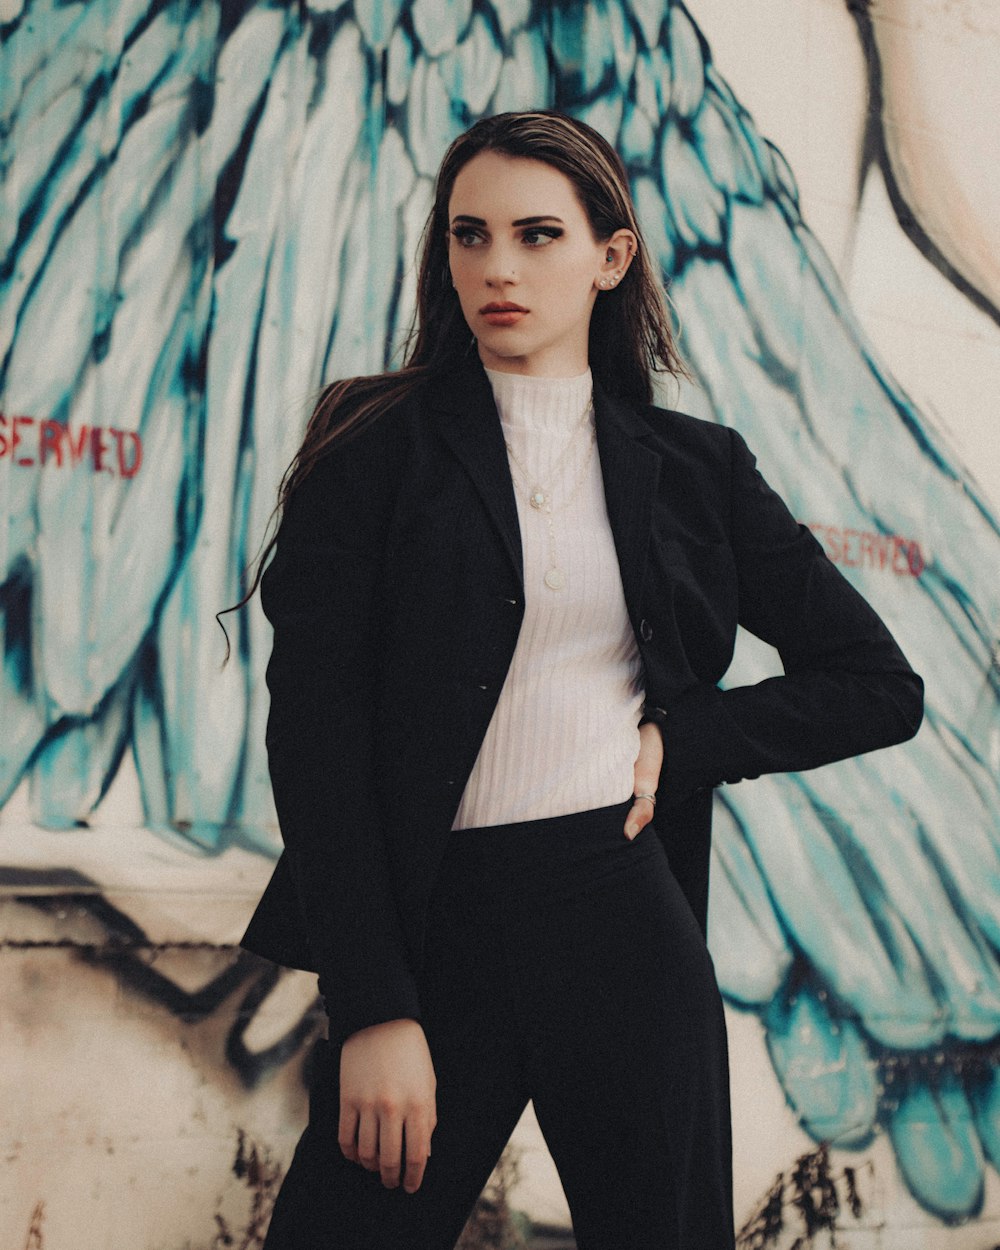 woman in black blazer standing beside graffiti wall